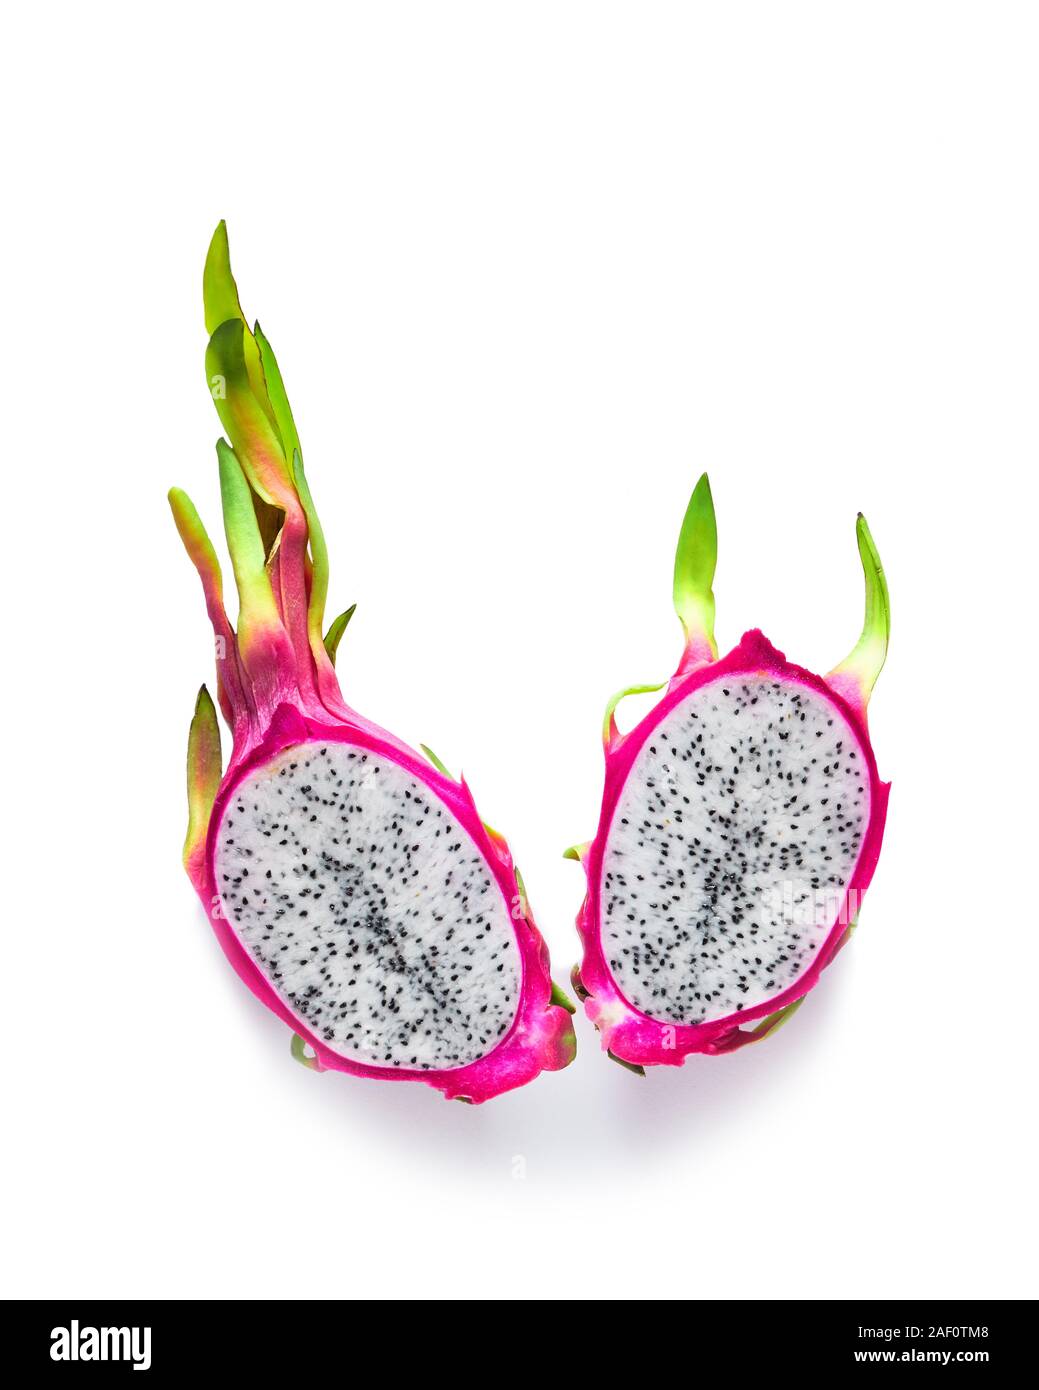 Produits bio frais dragonfruit (pitaya ou pitahaya) réduit de moitié, isolé sur fond blanc. Télévision créative mise en page avec des fruits exotiques à la mode, dans la ville animée de bol Banque D'Images